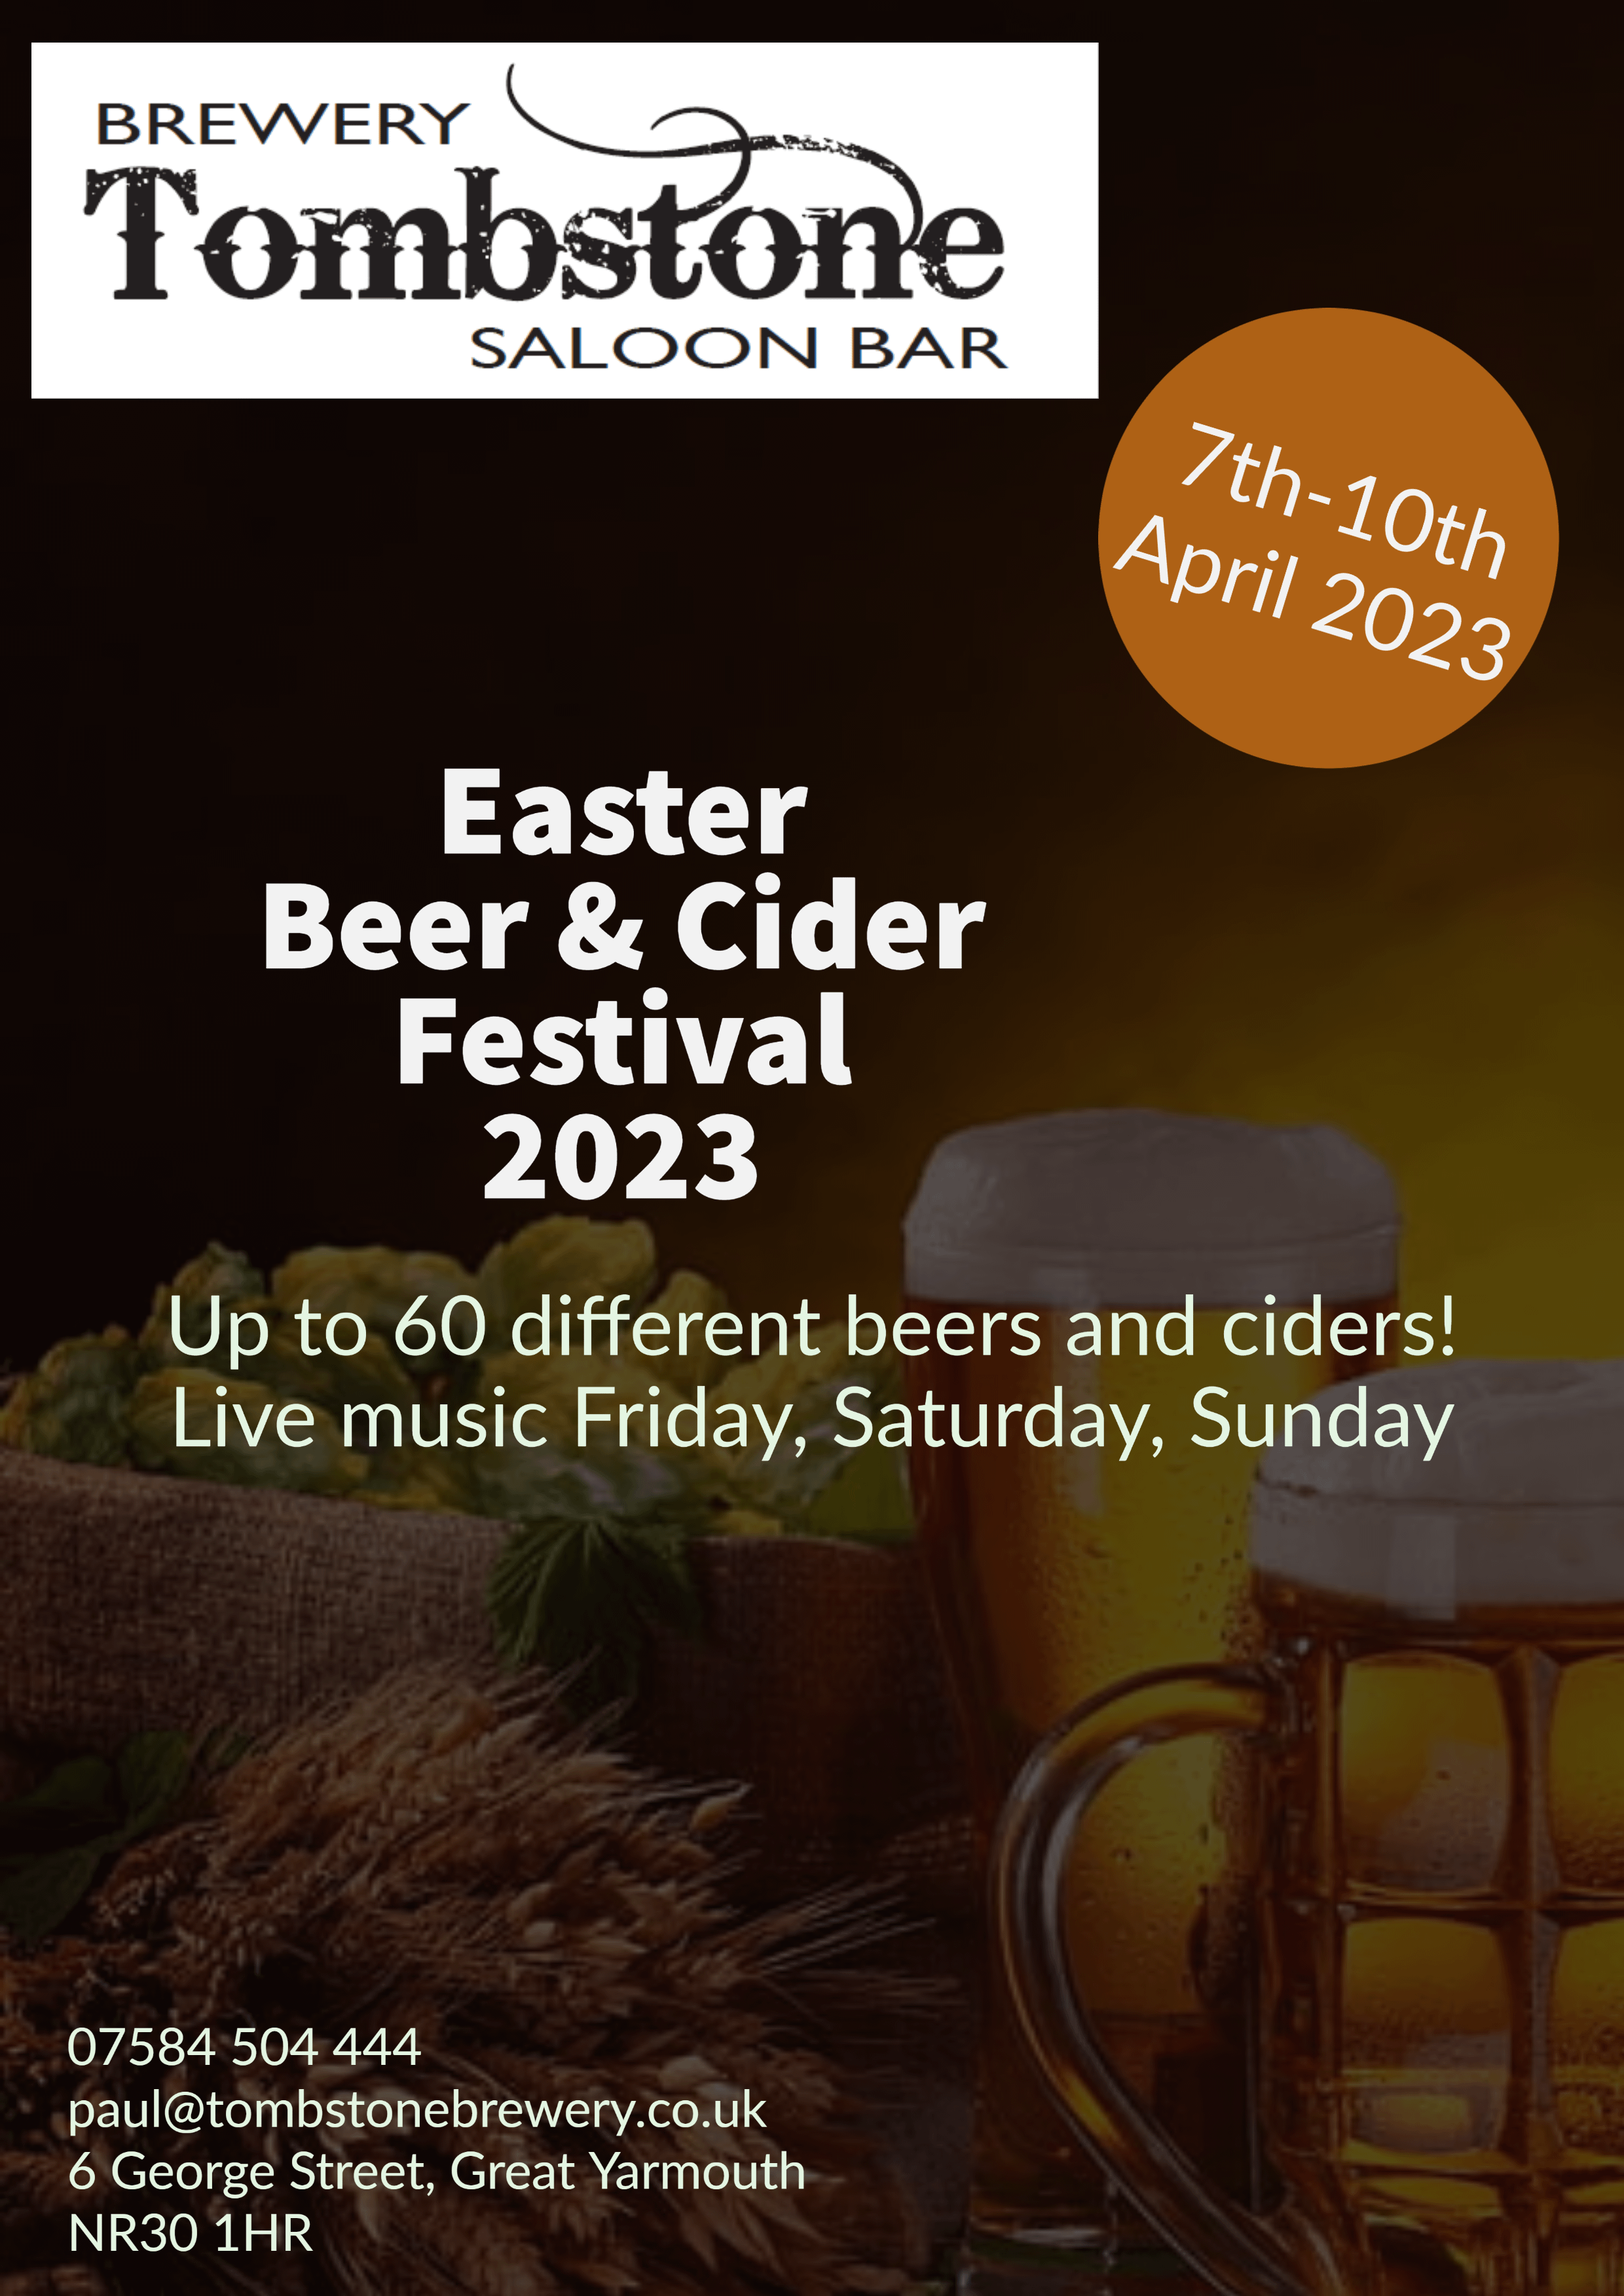 Easter Beer & Cider Festival 2023